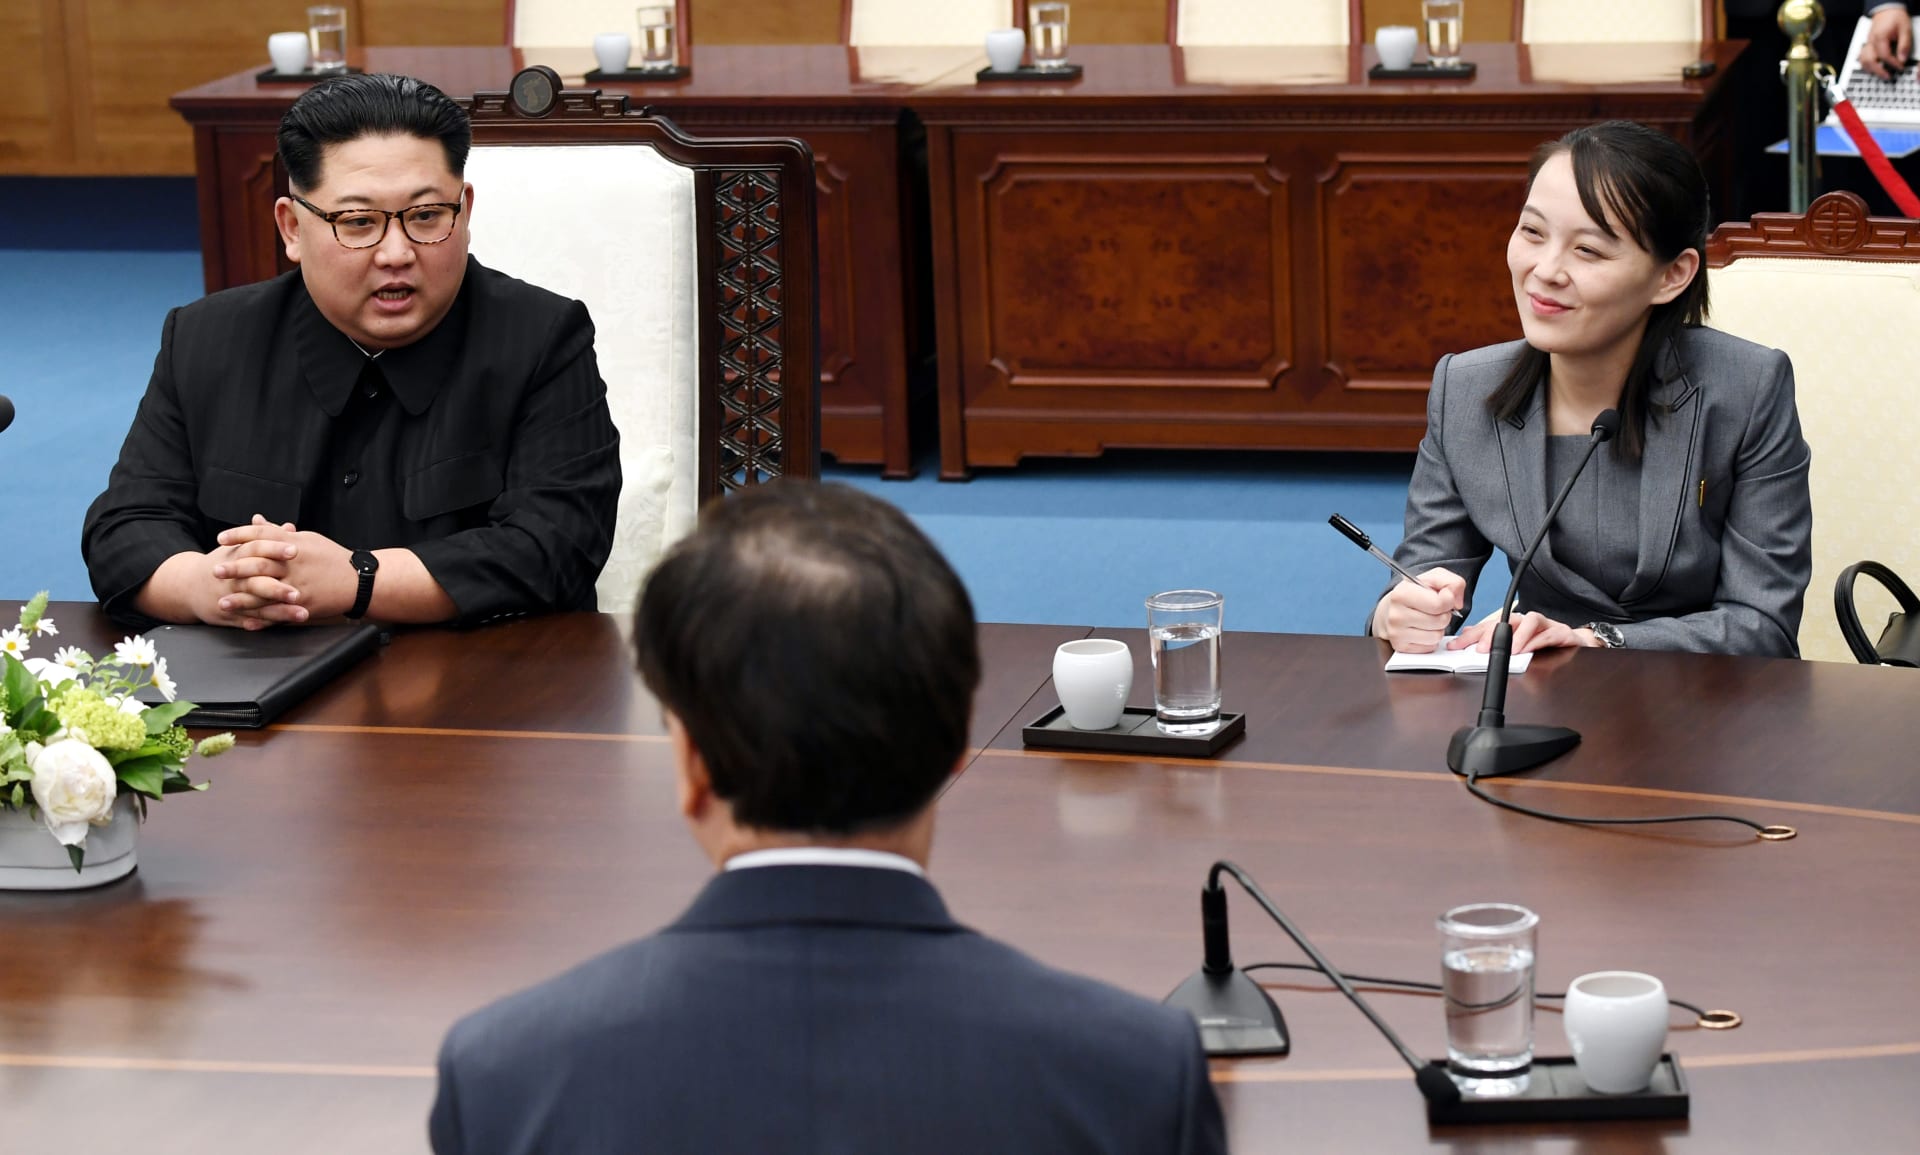 شقيقة زعيم كوريا الشمالية: ليس لدينا نية لتهديد أمريكا.. وانعقاد قمة رئاسية "غير محتمل"